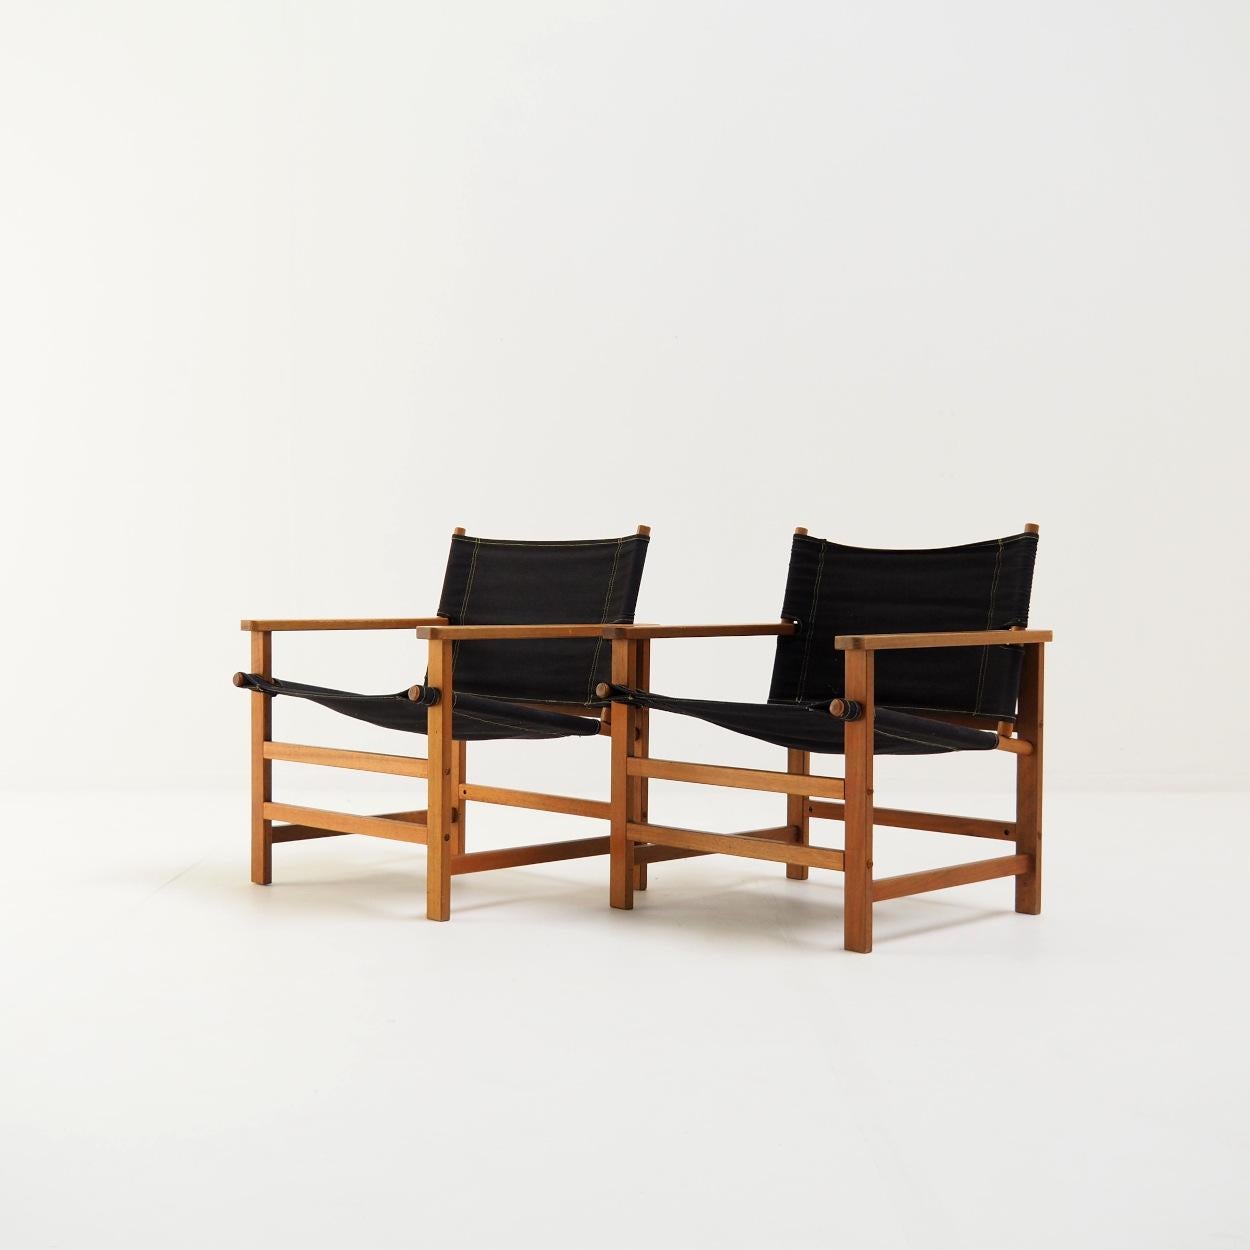 Charmant ensemble de chaises safari IKEA vintage très bien conservées.

Les chaises sont appelées 